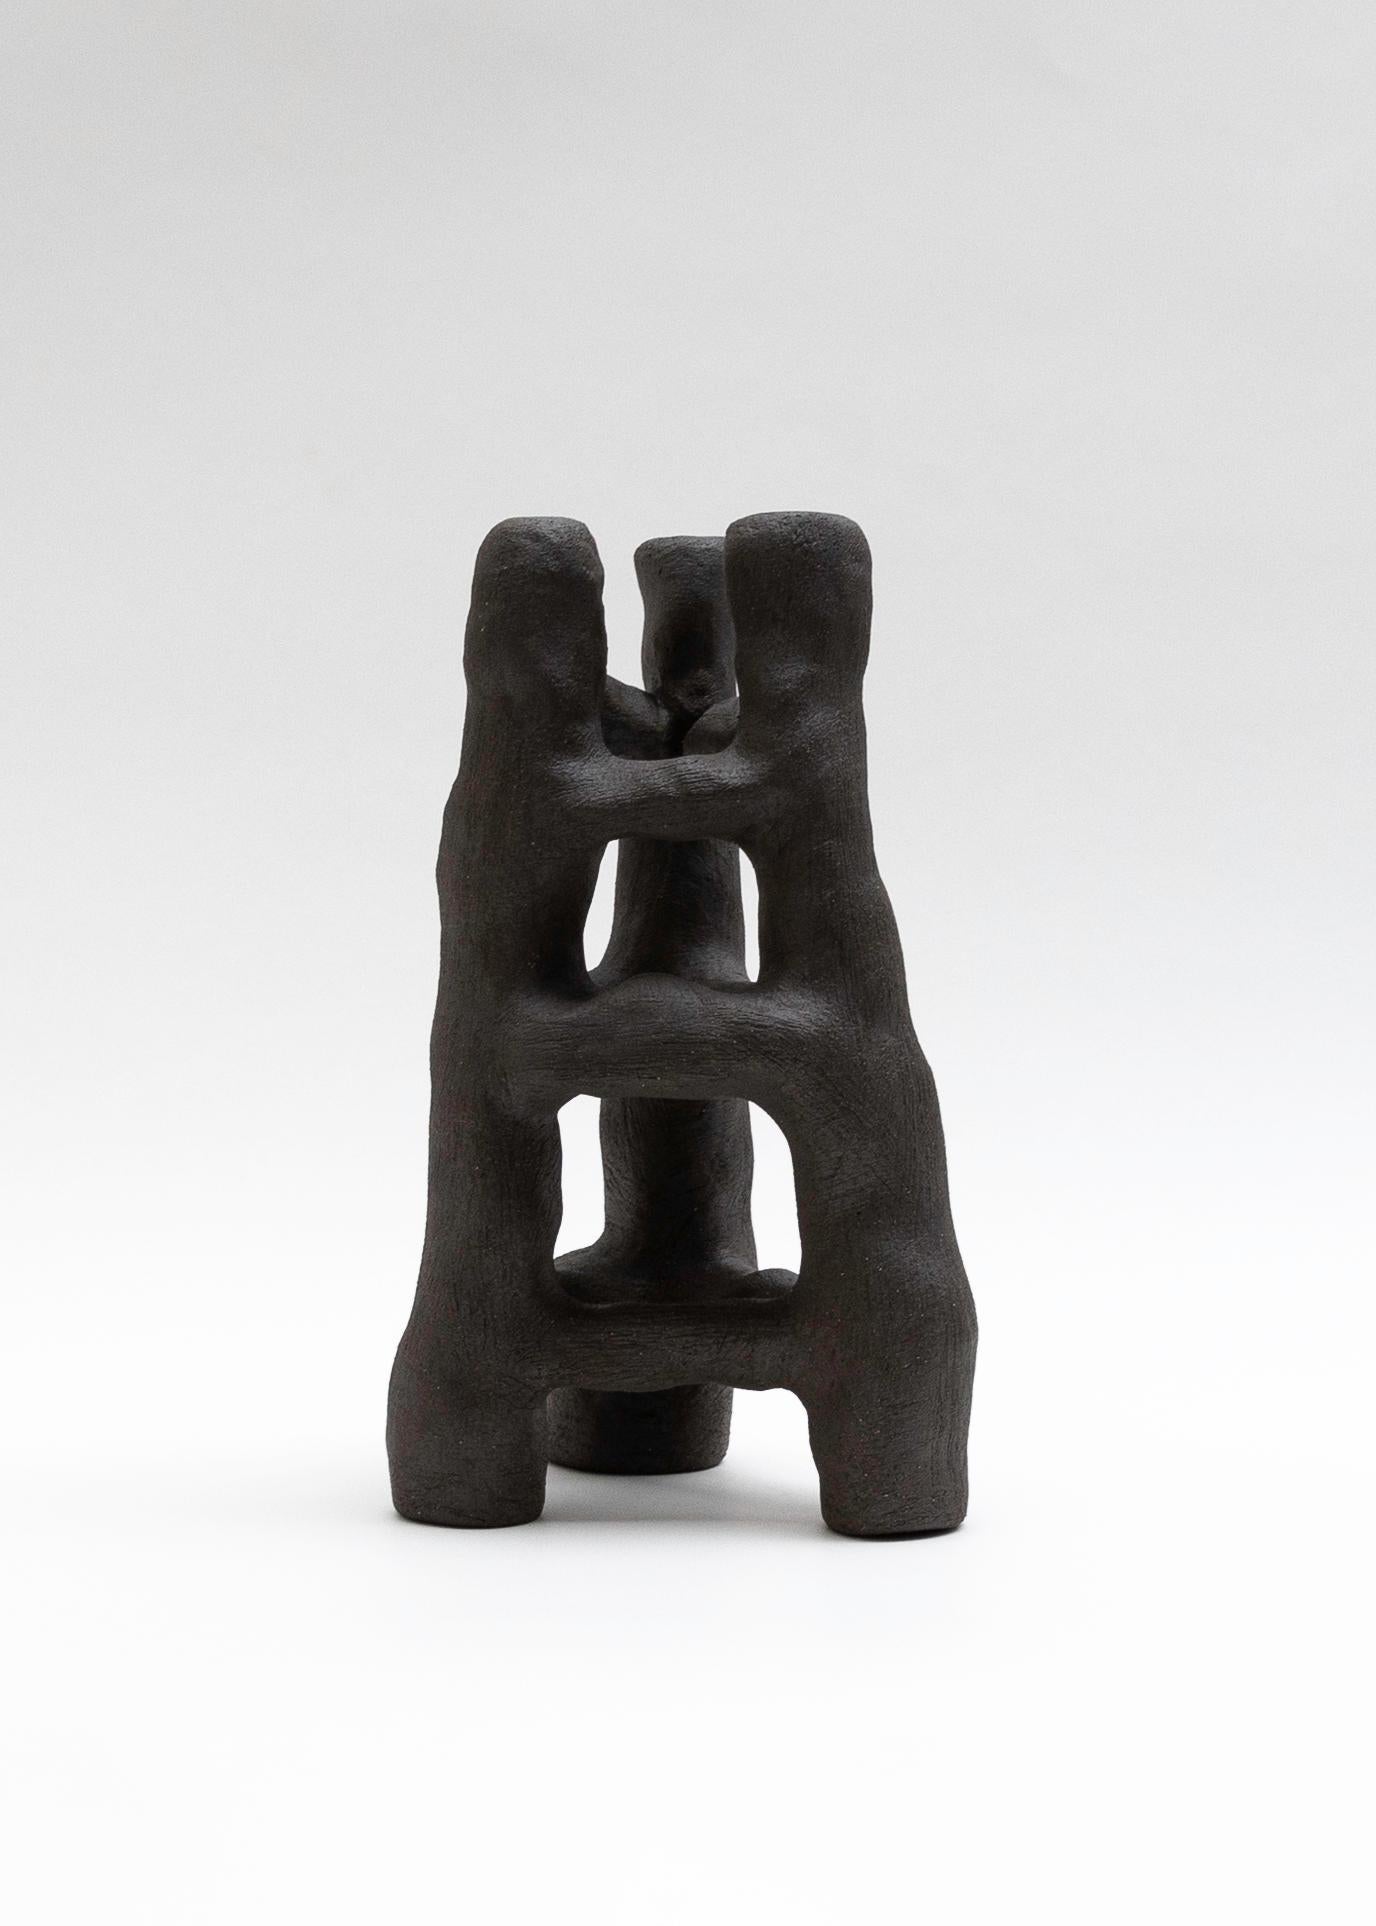 Arbre 01 Sculpture de Eglė Šimkus
Pièce unique.
Dimensions : D 18 x H 31 cm.
Matériaux : Argile.

Je m'appelle Eglė Šimkus et je suis née en Lituanie en 1990 d'une mère russe et d'un père lituanien. J'ai vécu en Lituanie jusqu'en 1999, date à